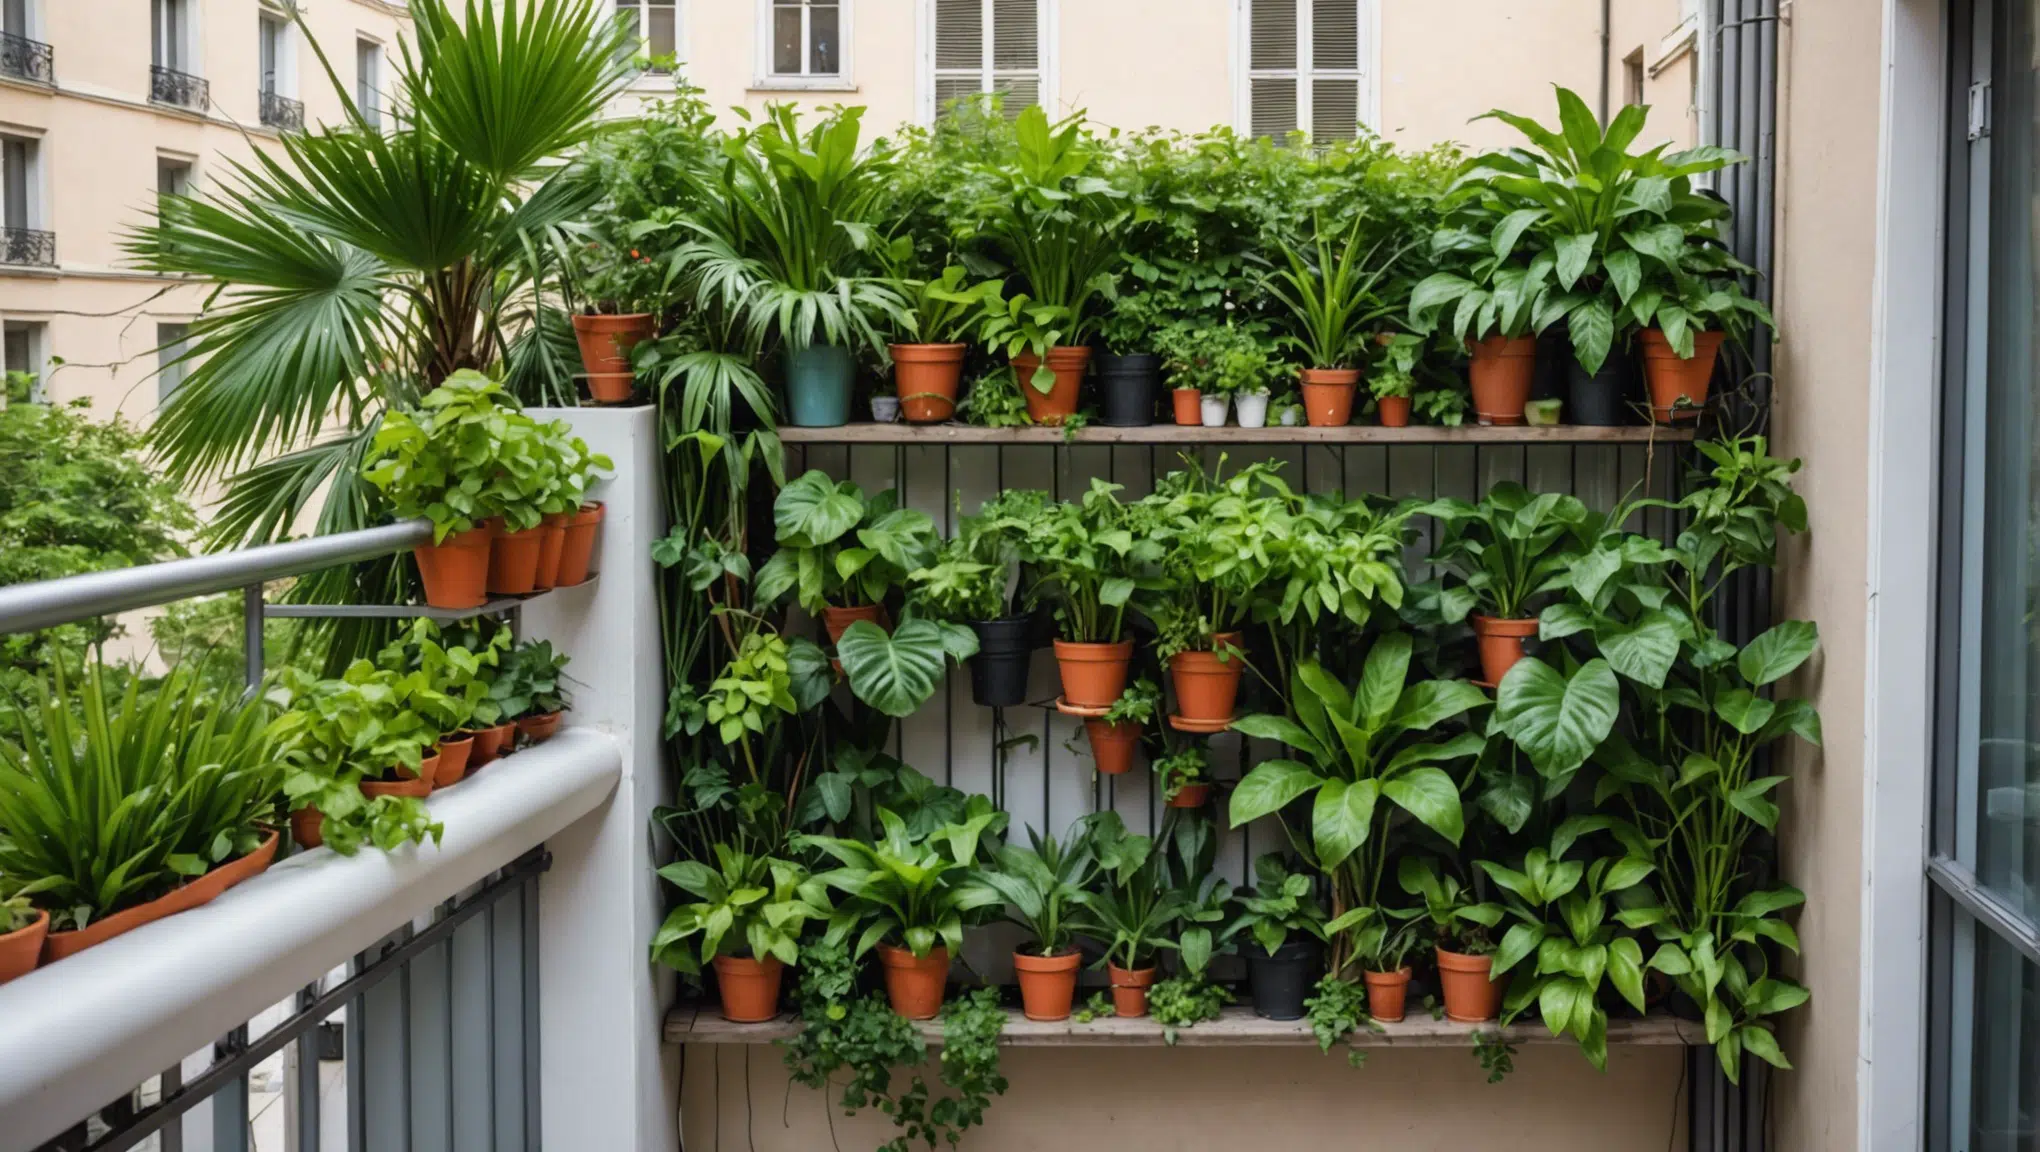 découvrez comment métamorphoser un petit balcon en véritable oasis urbaine grâce à des méthodes novatrices de jardinage.